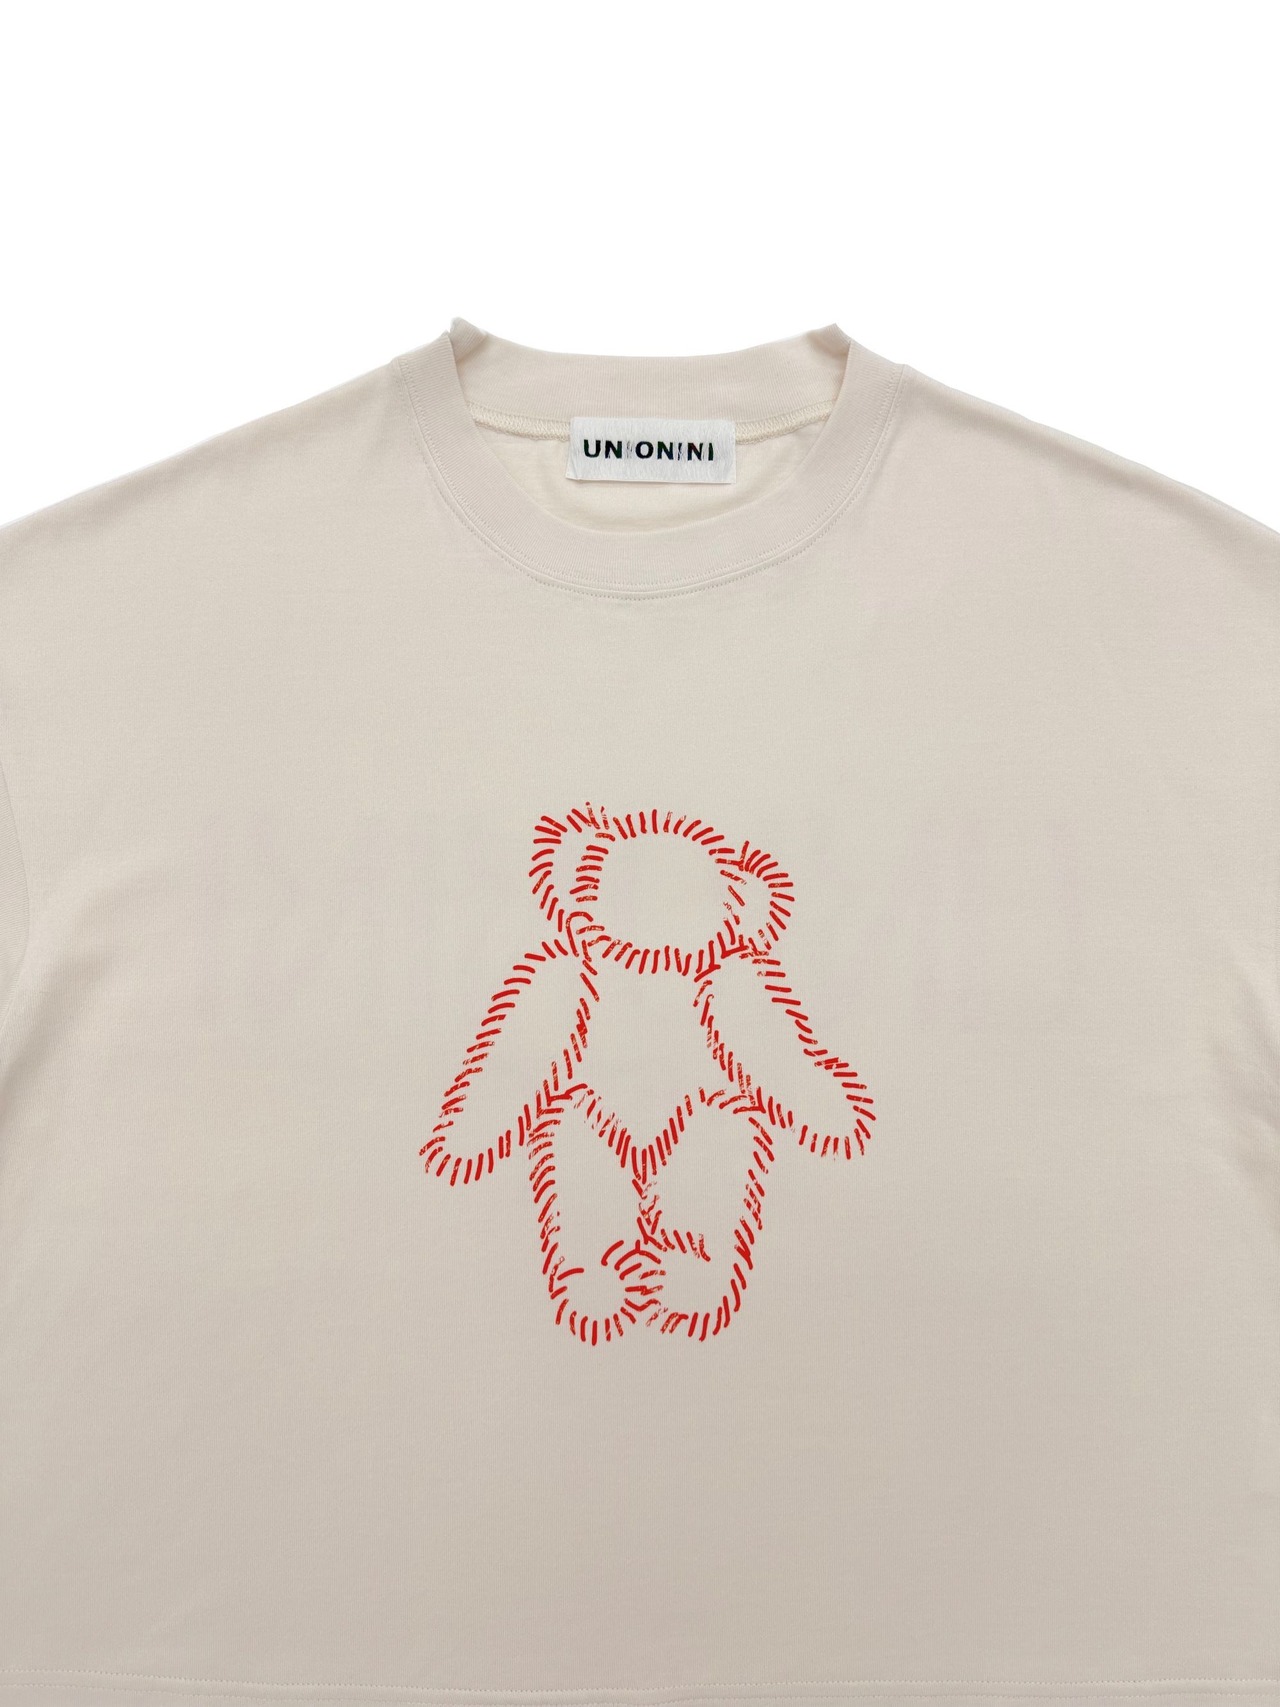 〈 UNIONINI 24SS 〉 teddybear logo big tee "Tシャツ" / Pink Beige / Kids